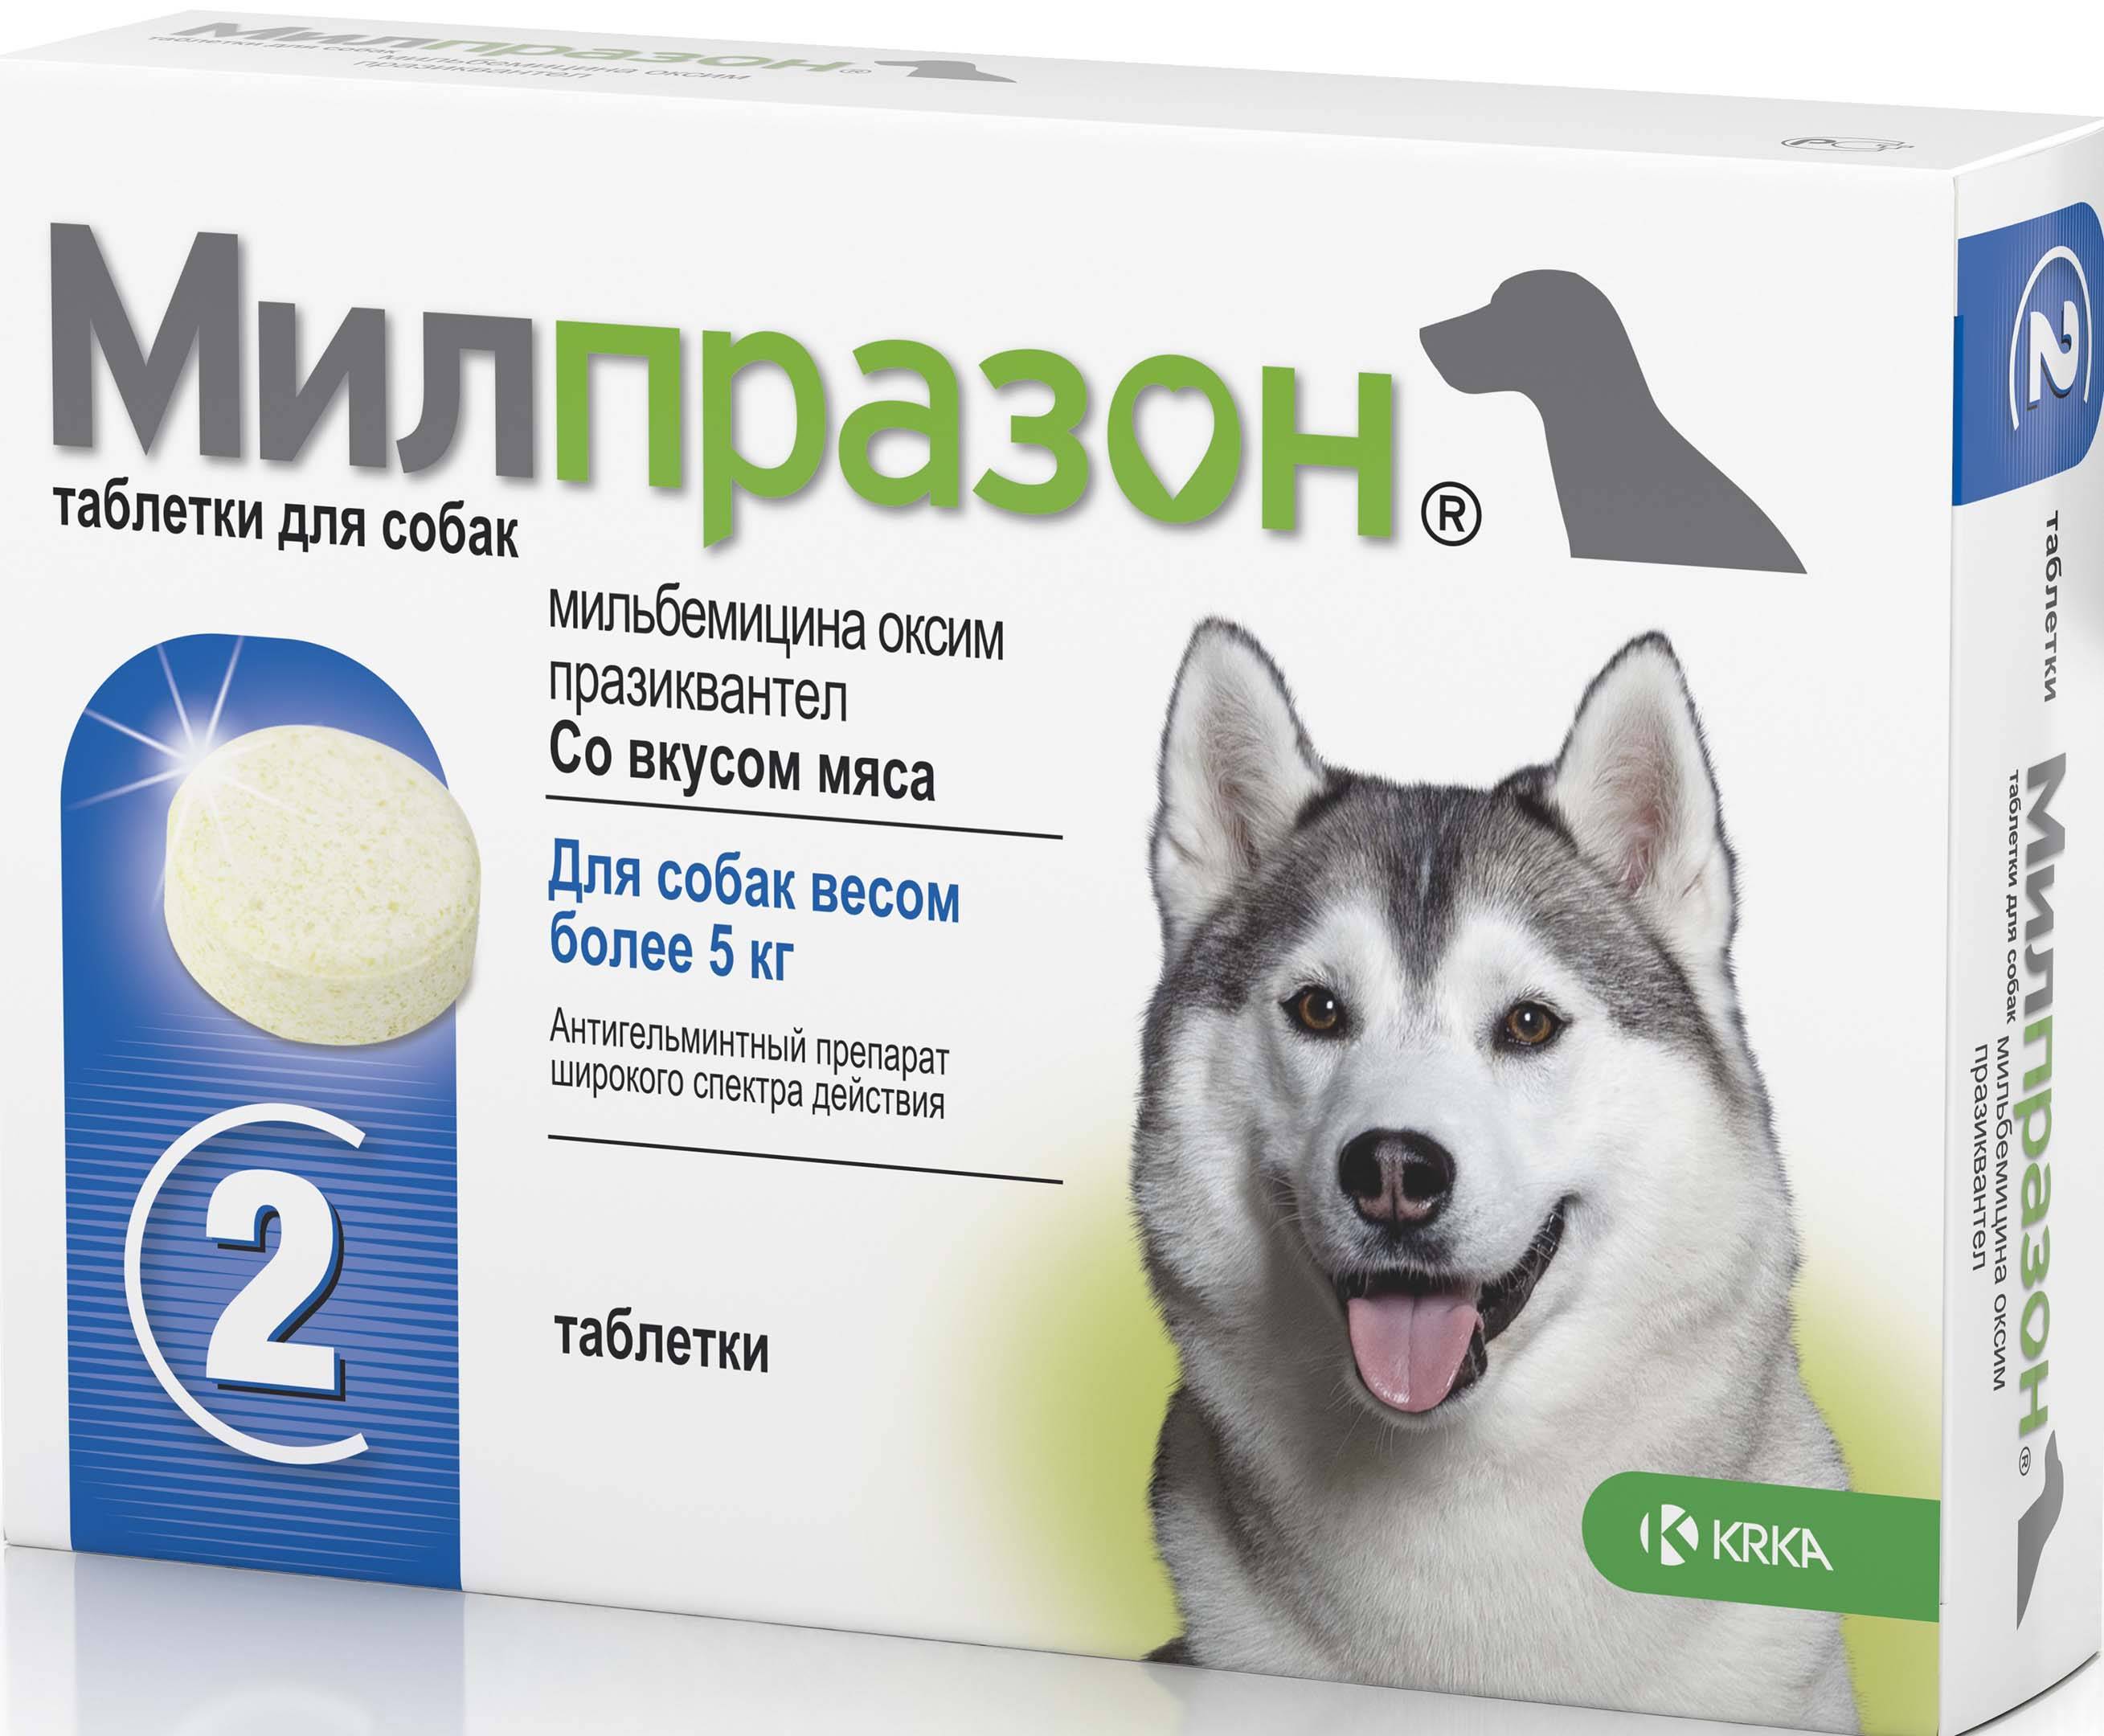 Выбор и применение таблеток от глистов для собак